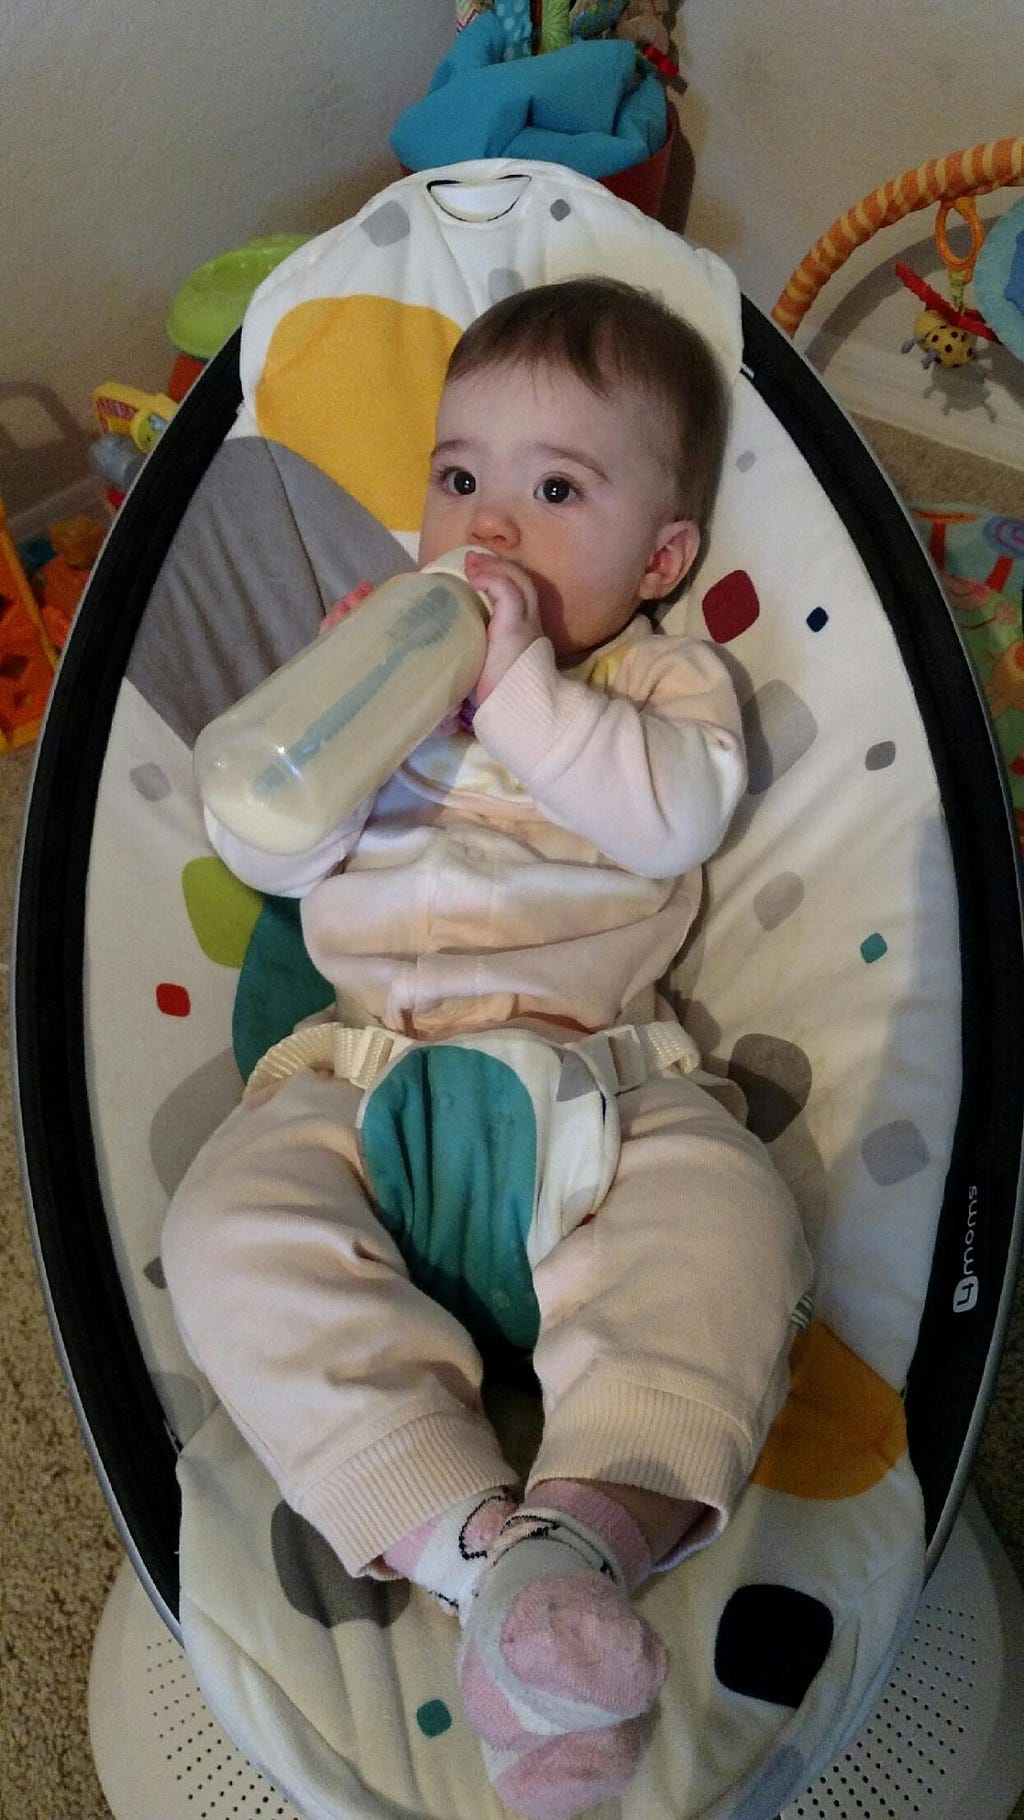 Baby girl holding her own bottle.